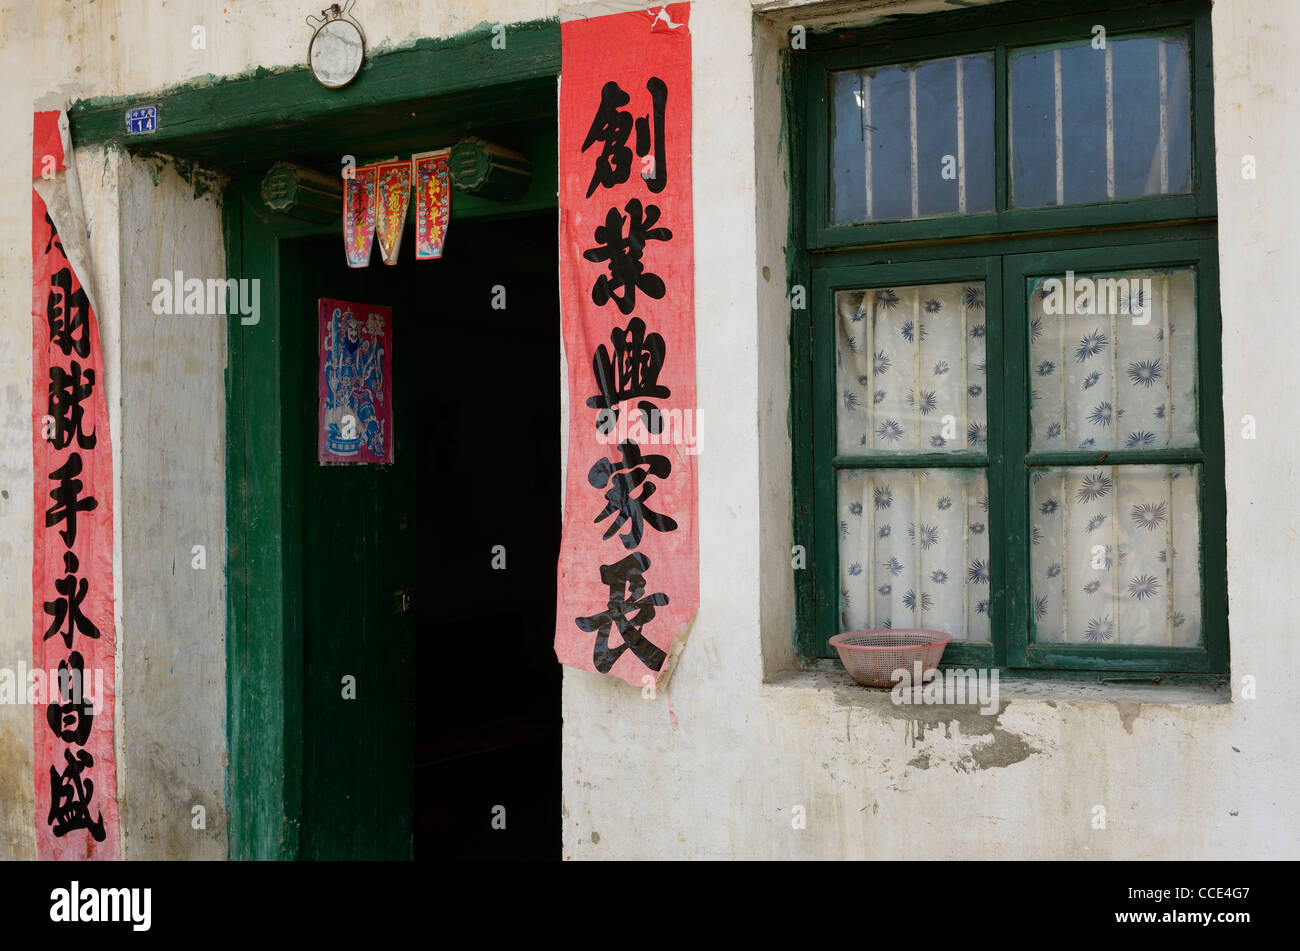 Duilian pergaminos de poesía colgando fuera una puerta verde Fuli en la República Popular de China Foto de stock